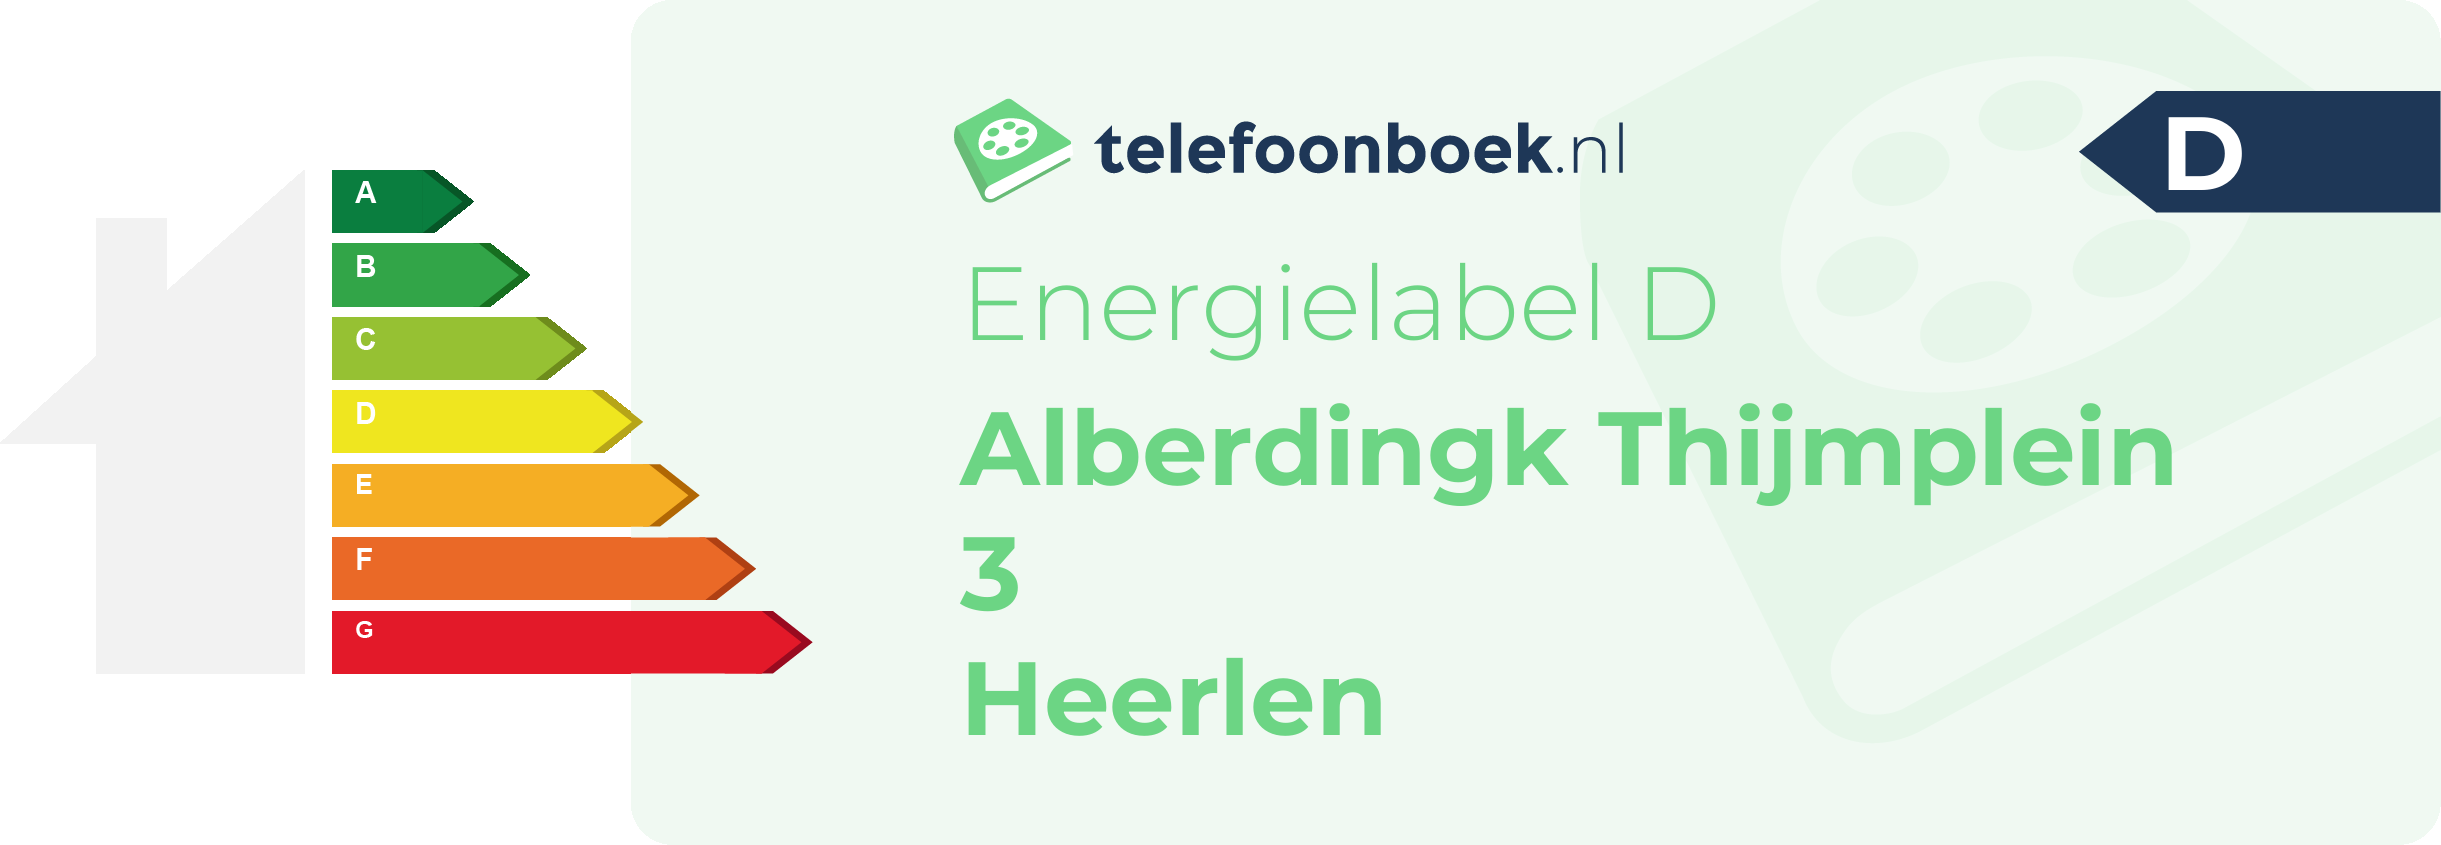 Energielabel Alberdingk Thijmplein 3 Heerlen